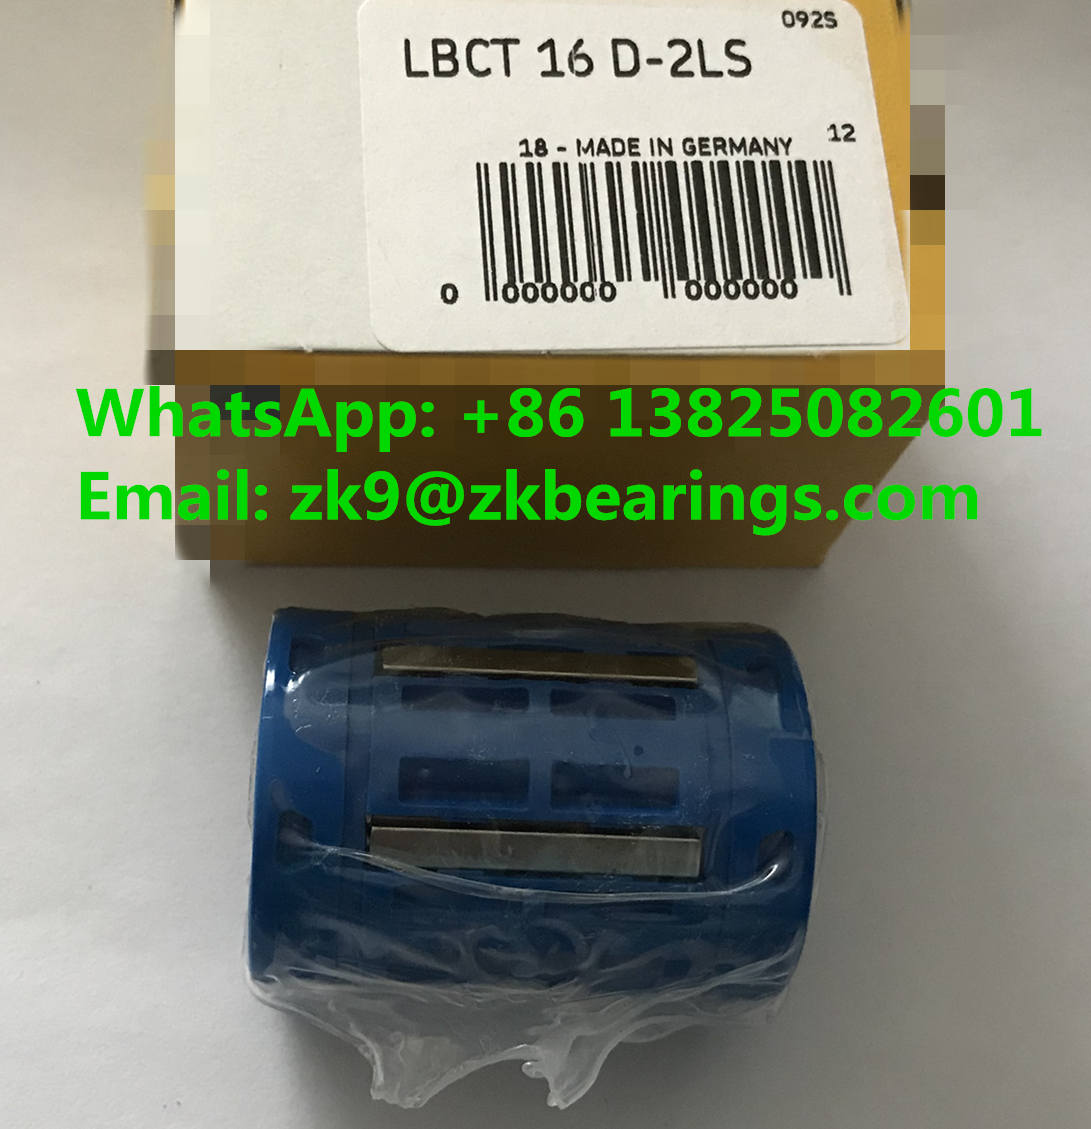 Linear Bushing LBCT 16-2LS Linear Ball Bearing 16x26x36mm